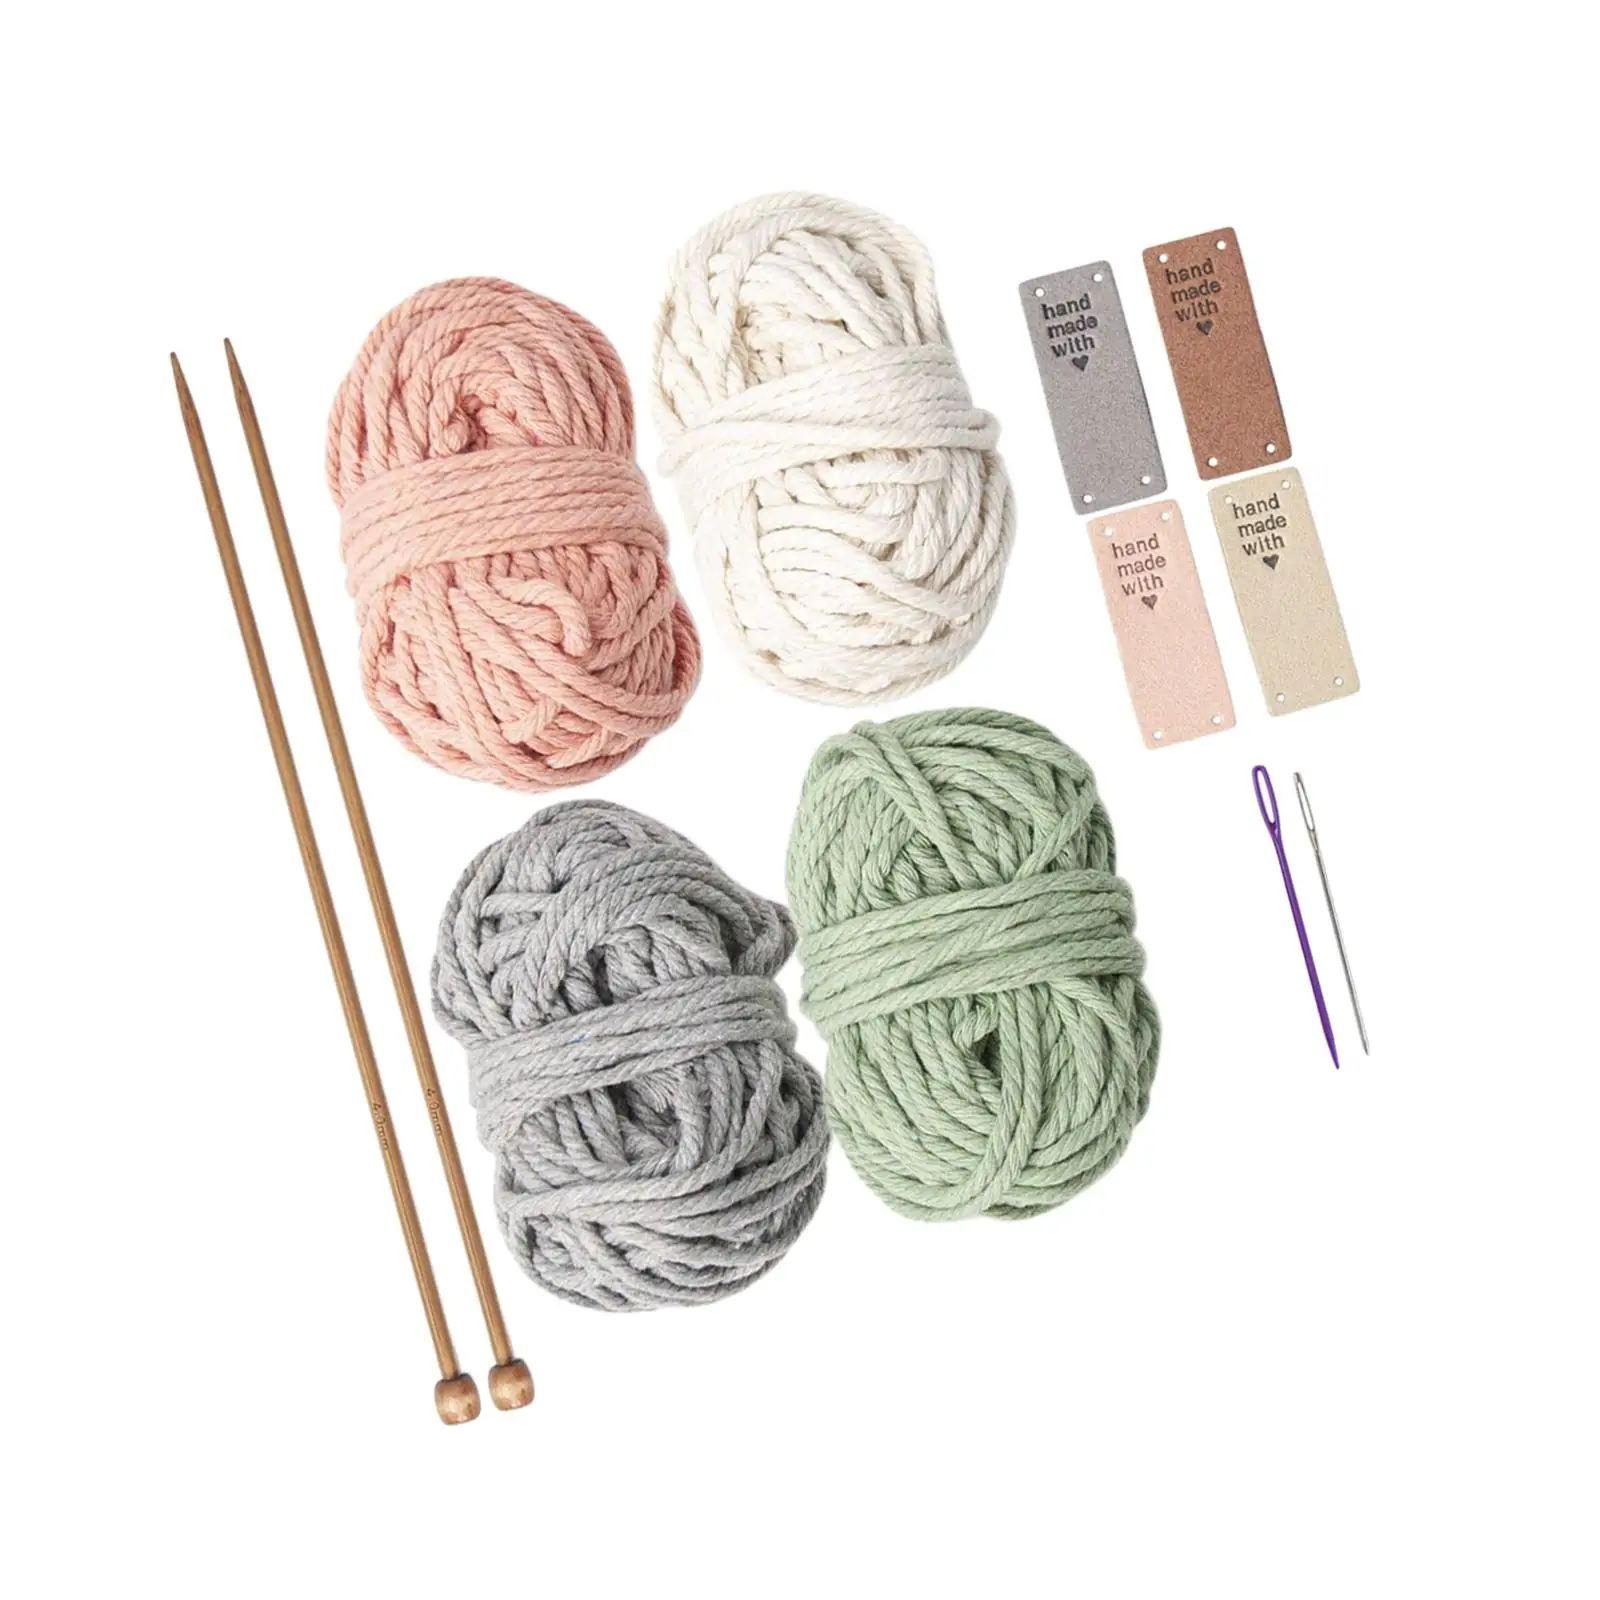 Crochet Kit for Beginners 4 Color Handwoven for Starter Children Needlework